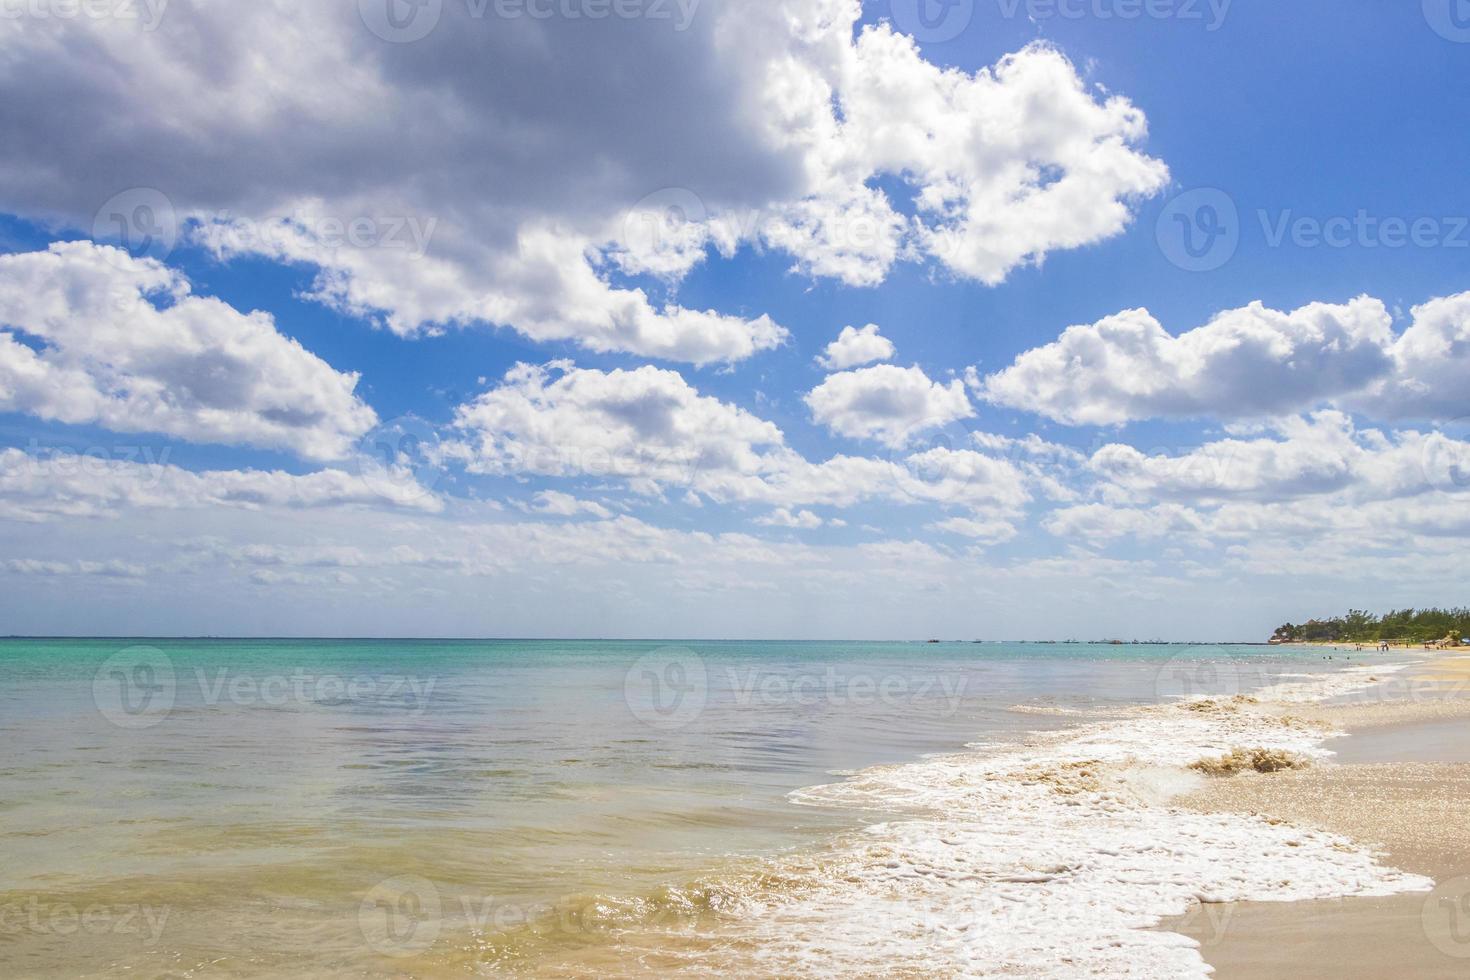 playa tropical mexicana 88 punta esmeralda playa del carmen mexico. foto